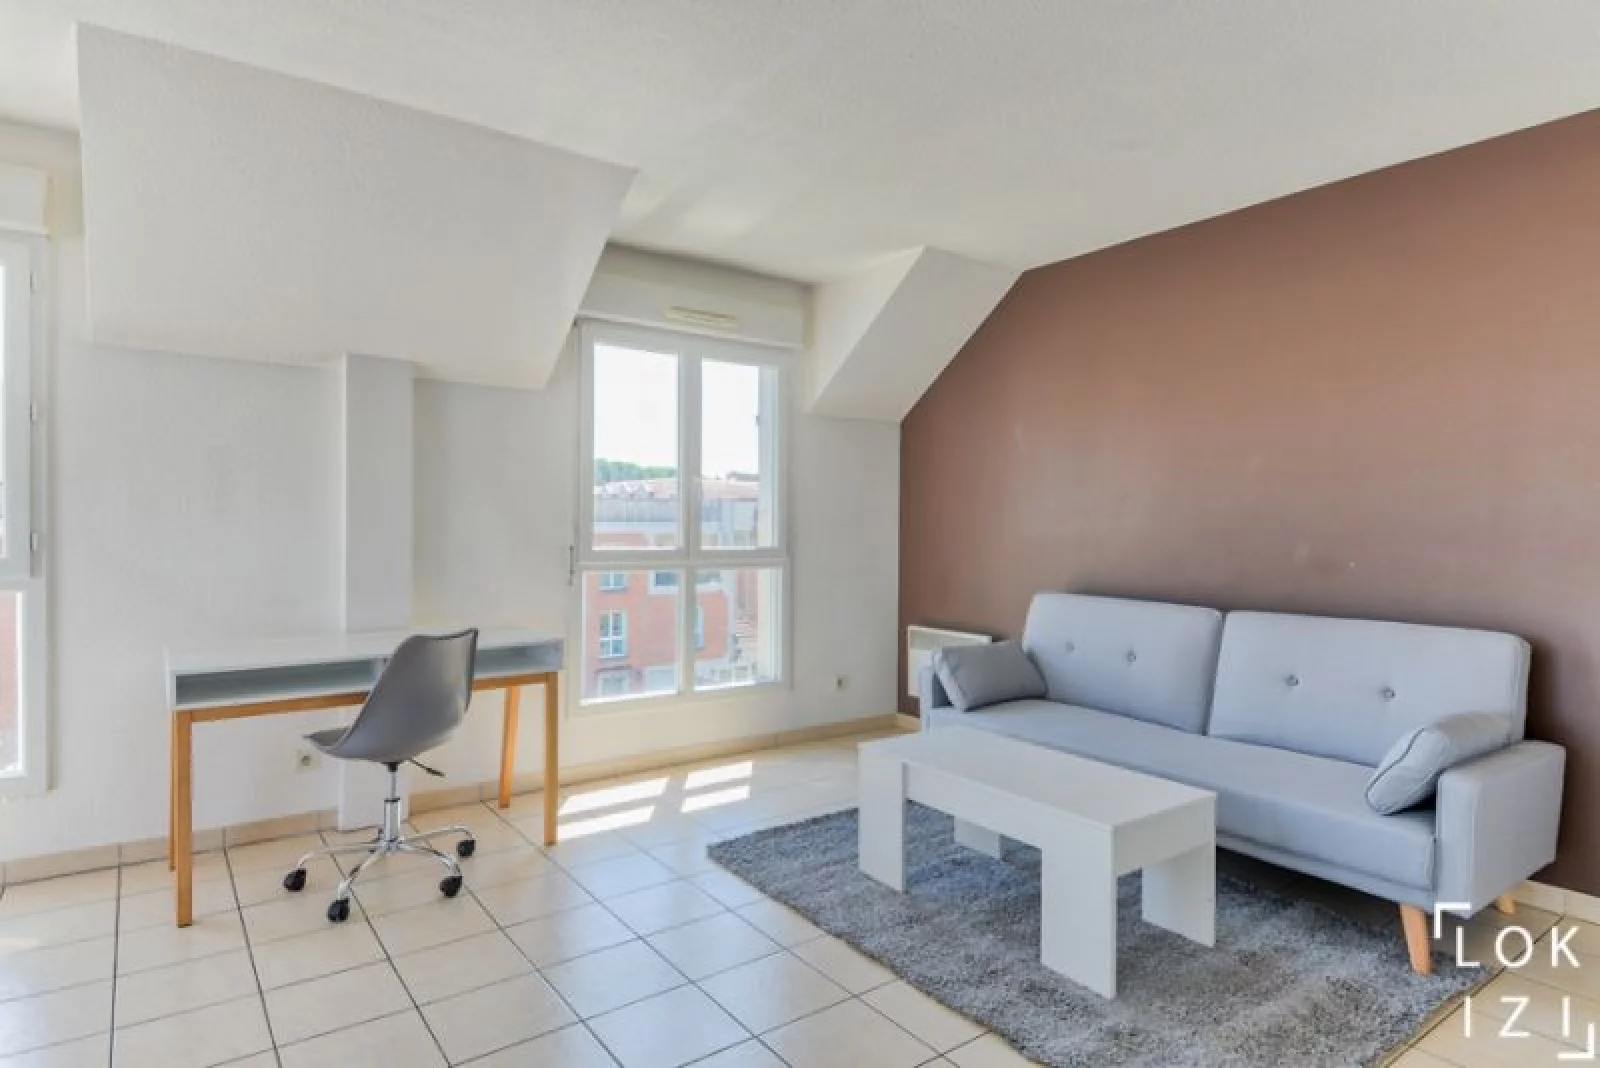 Location appartement meublé 3 pièces 70m² (Paris est - Bry sur Marne)